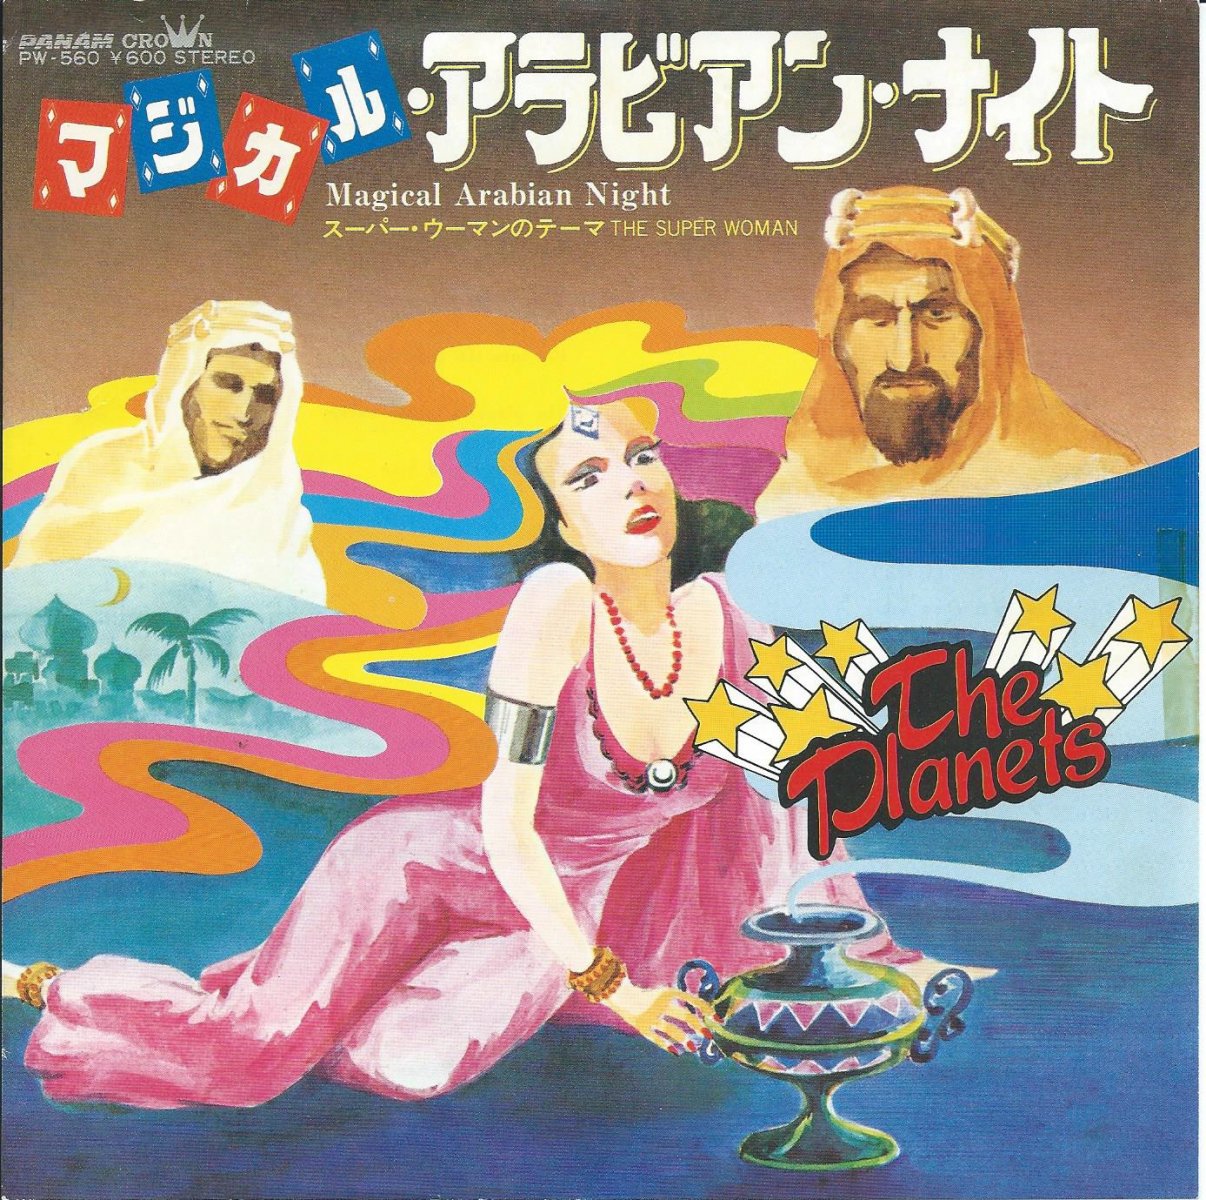 THE PLANETS / マジカル・アラビアン・ナイト MAGICAL ARABIAN NIGHT 